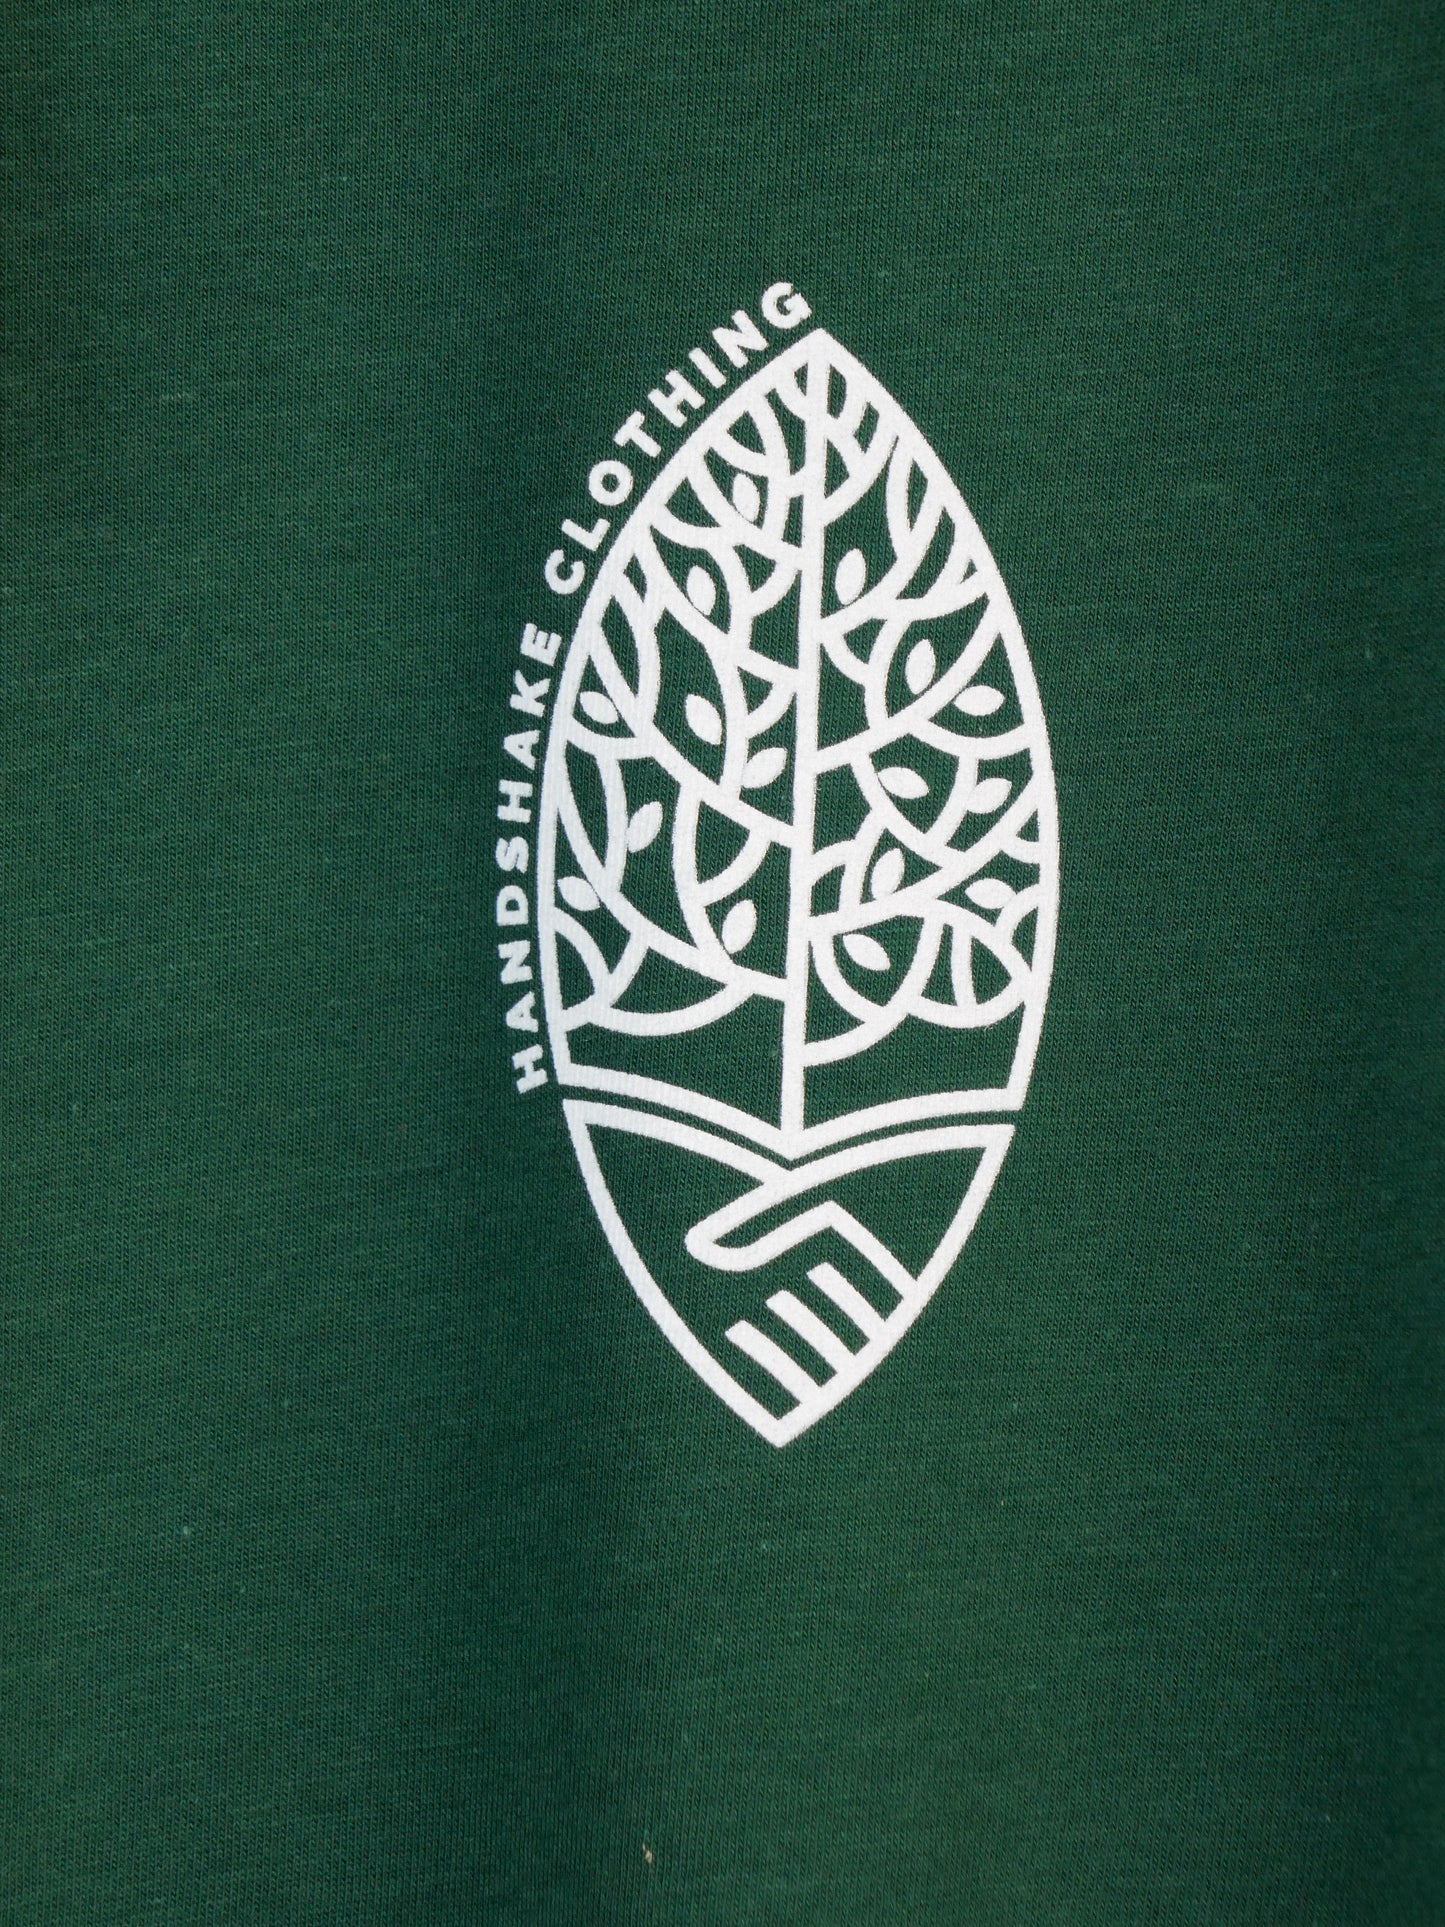 MIRO aus Holzfaser (EcoVero) mit kleinem Logo, bottle green